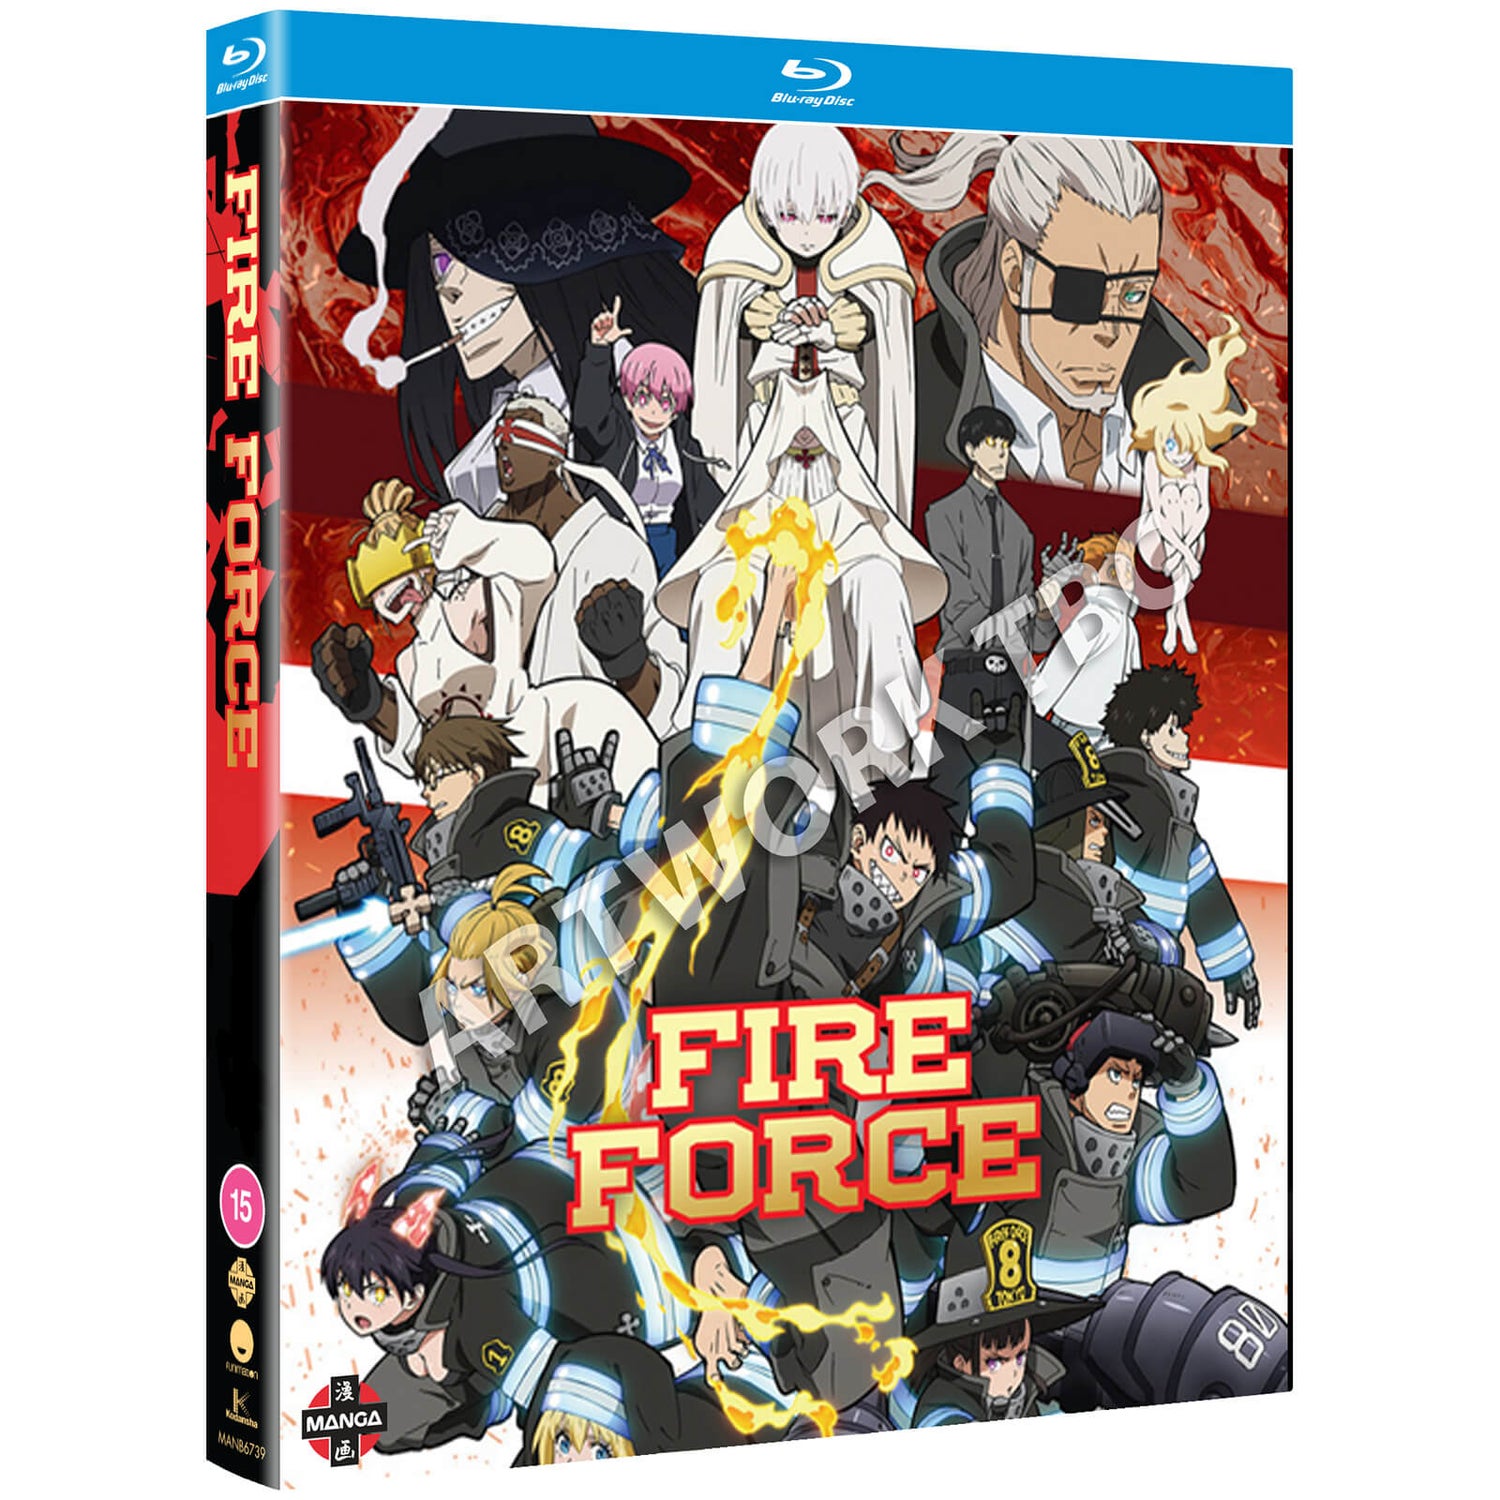 Fire Force Staffel 2 Teil 1 - Blu-ray/DVD Combo + Digital Copy